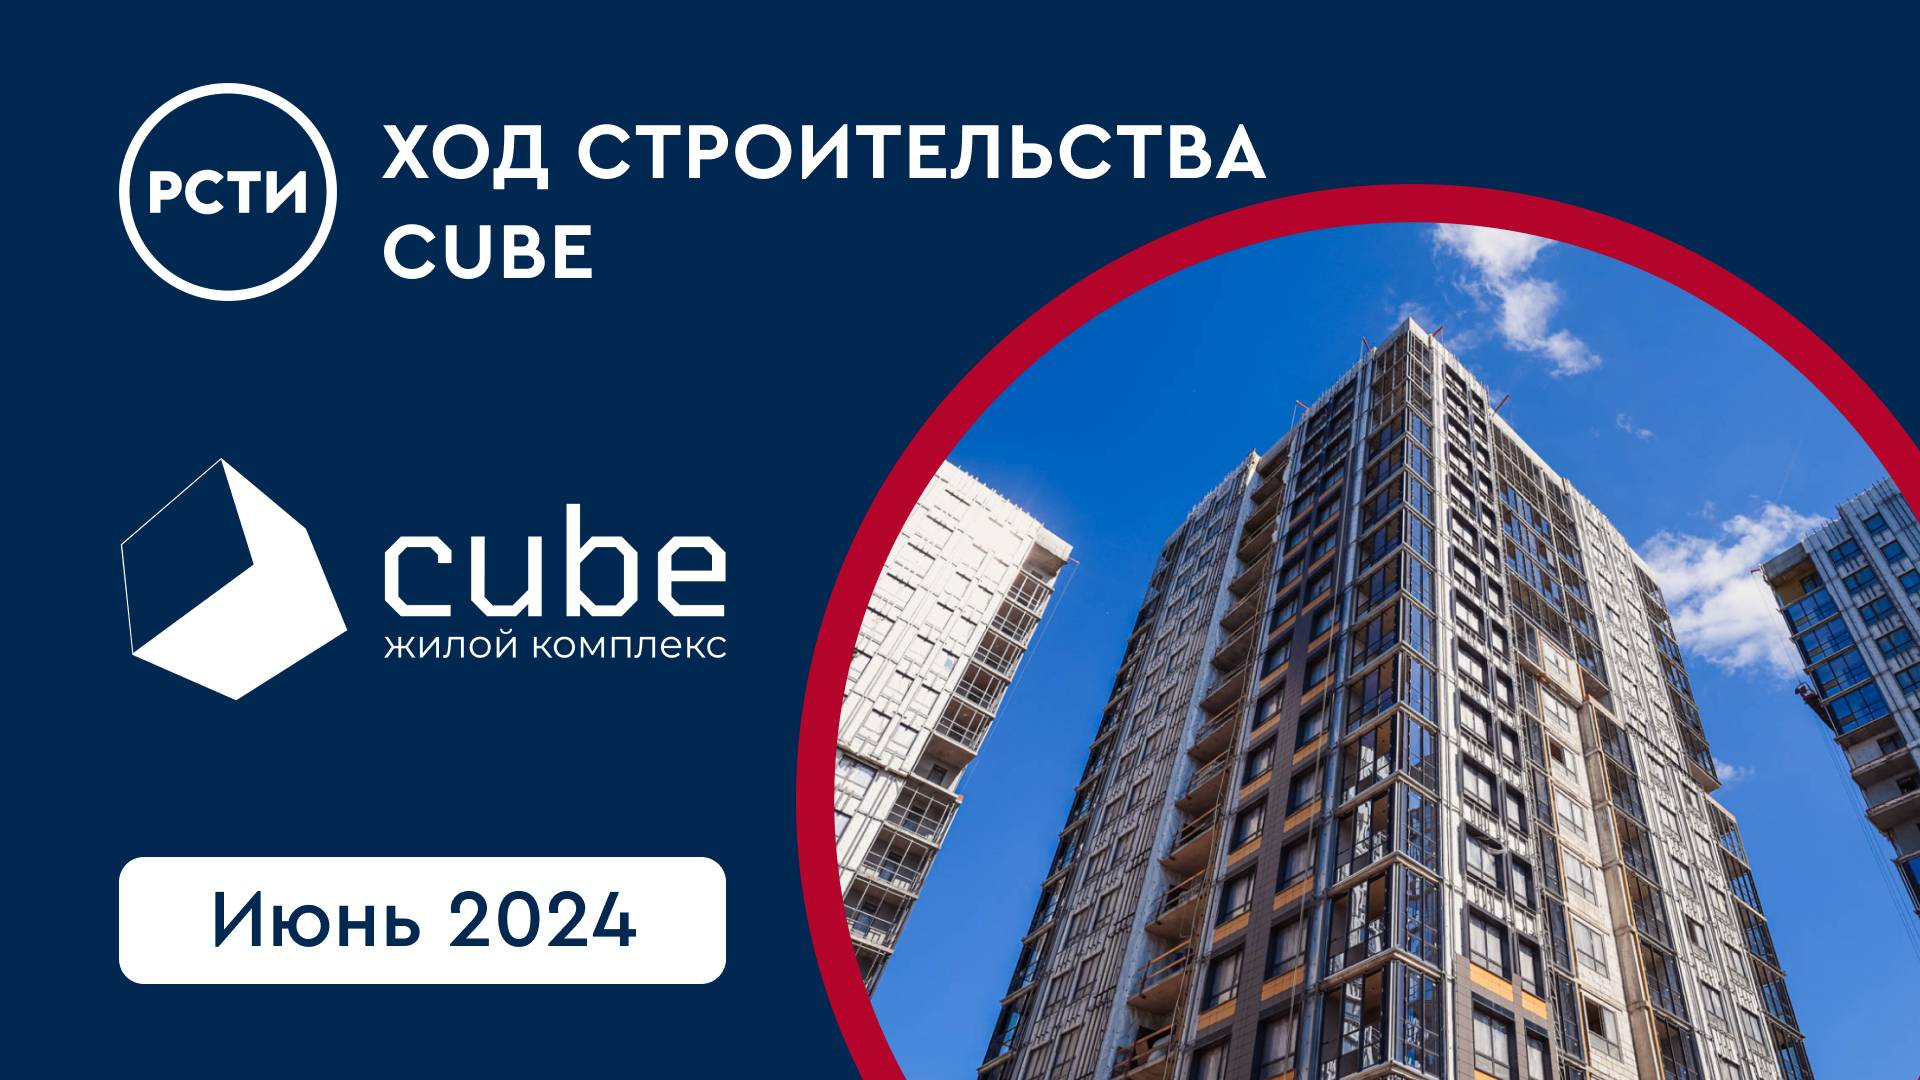 Ход строительства ЖК Cube в Московском районе. Июнь 2024